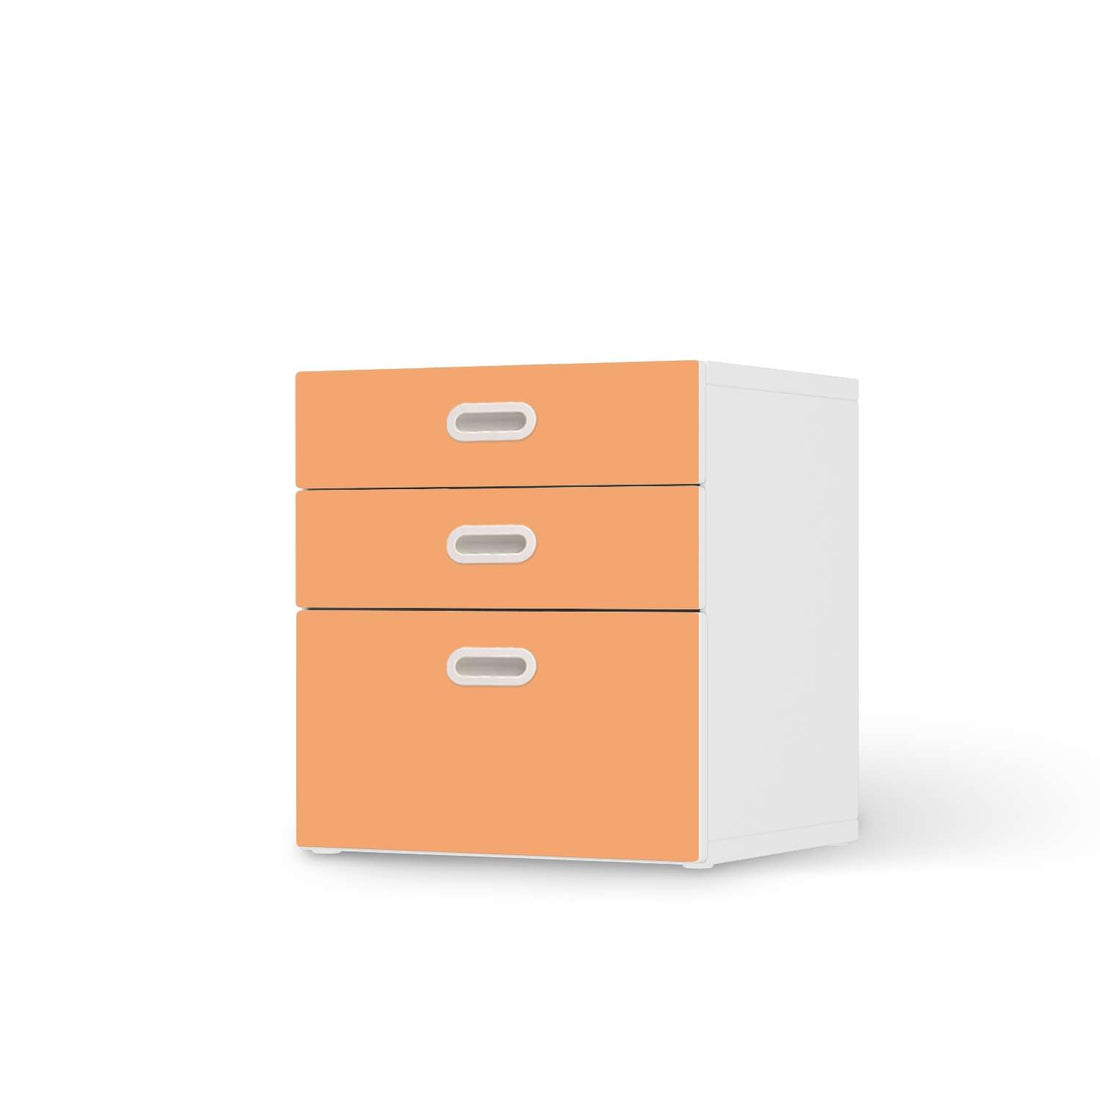 Folie für Möbel Orange Light - IKEA Stuva / Fritids Kommode - 3 Schubladen  - weiss